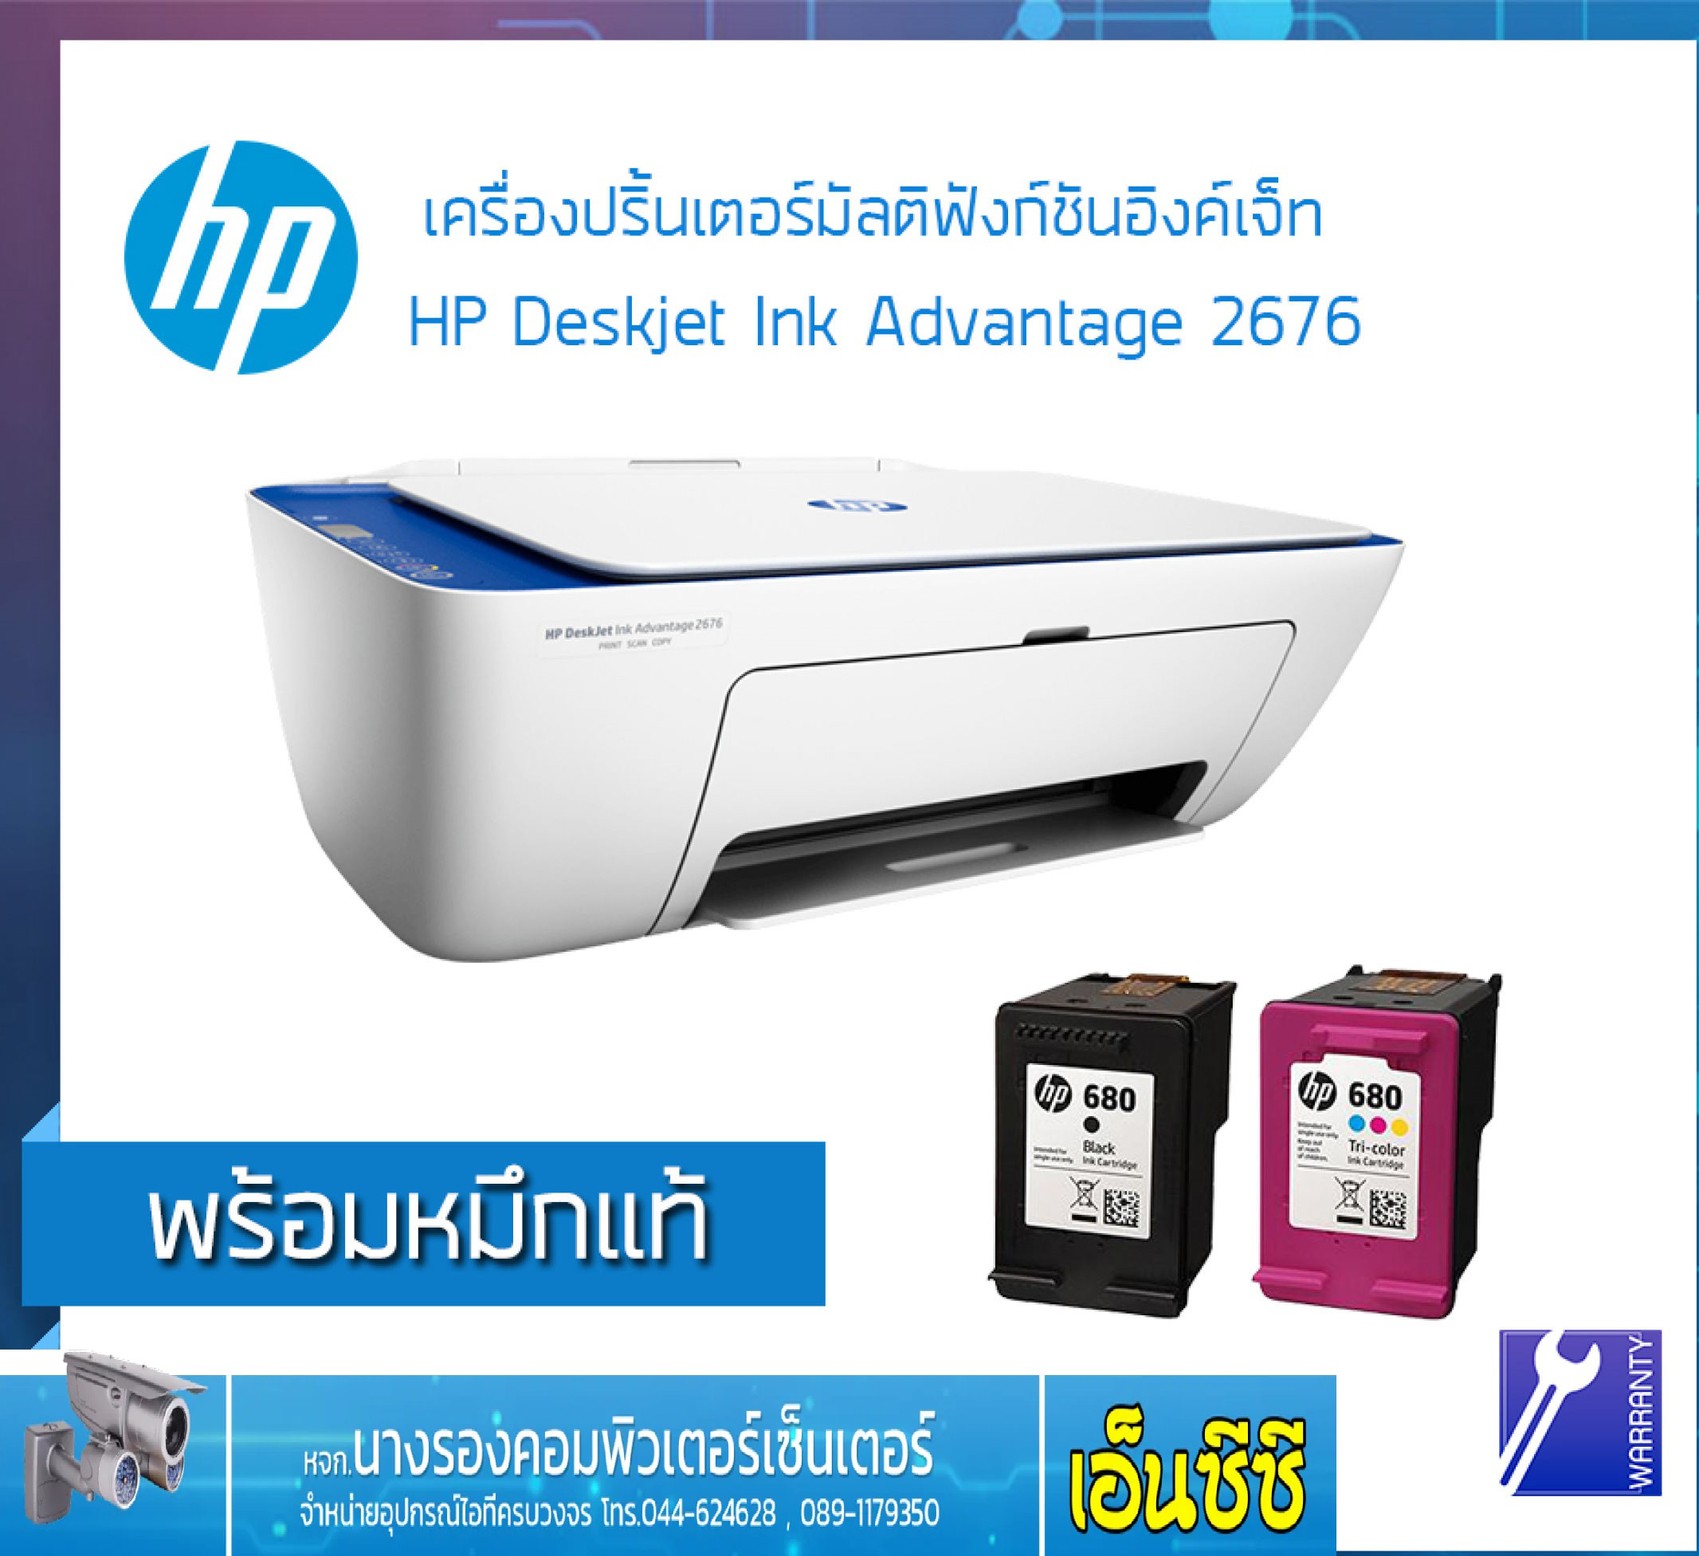 hp deskjet ink advantage 2515 ราคา software